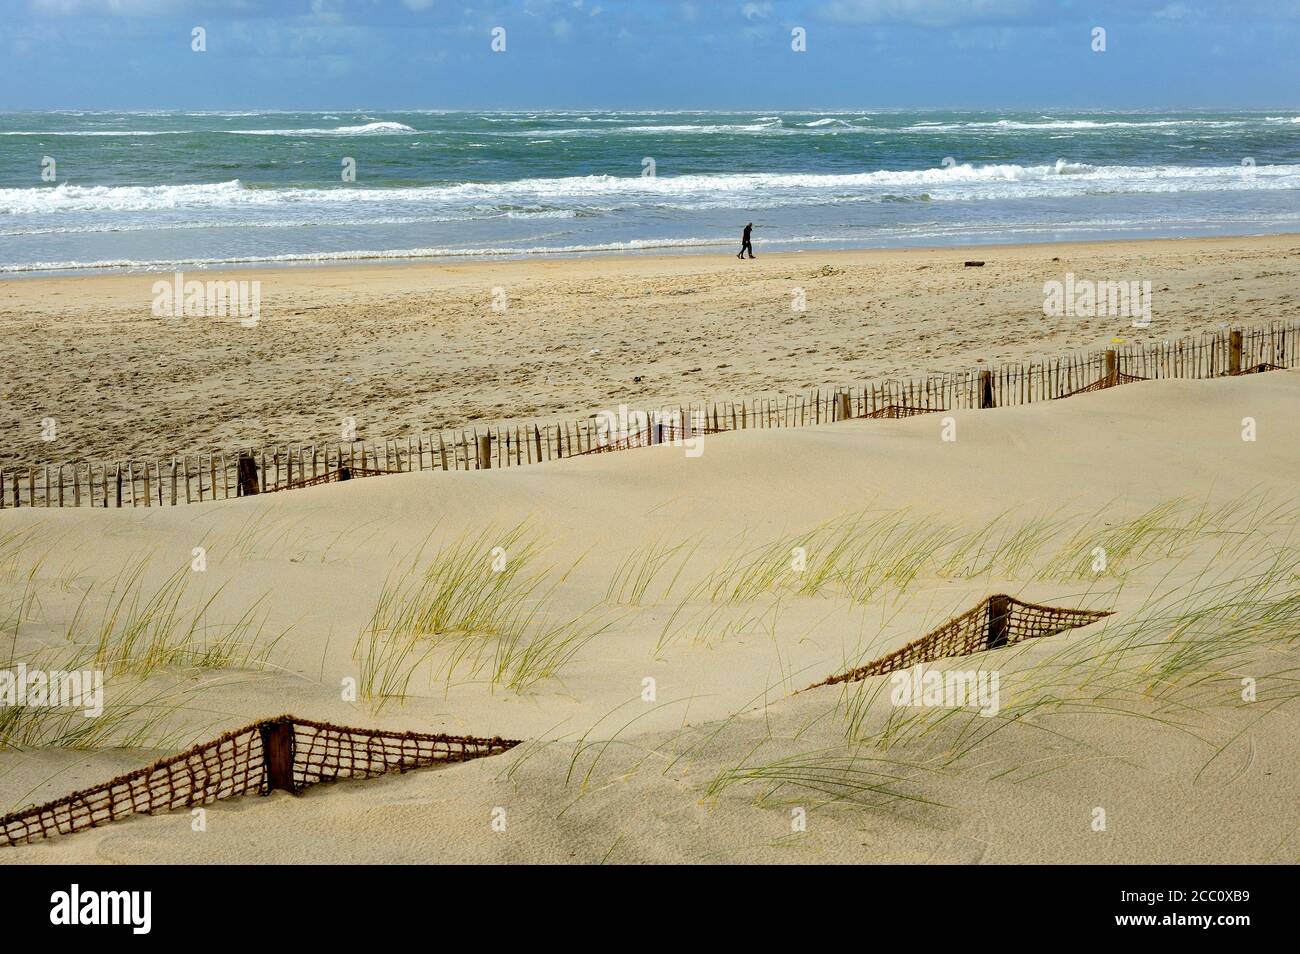 La France, le sud-ouest de la France, Arcachon, protection contre l'empiètement de sable Banque D'Images